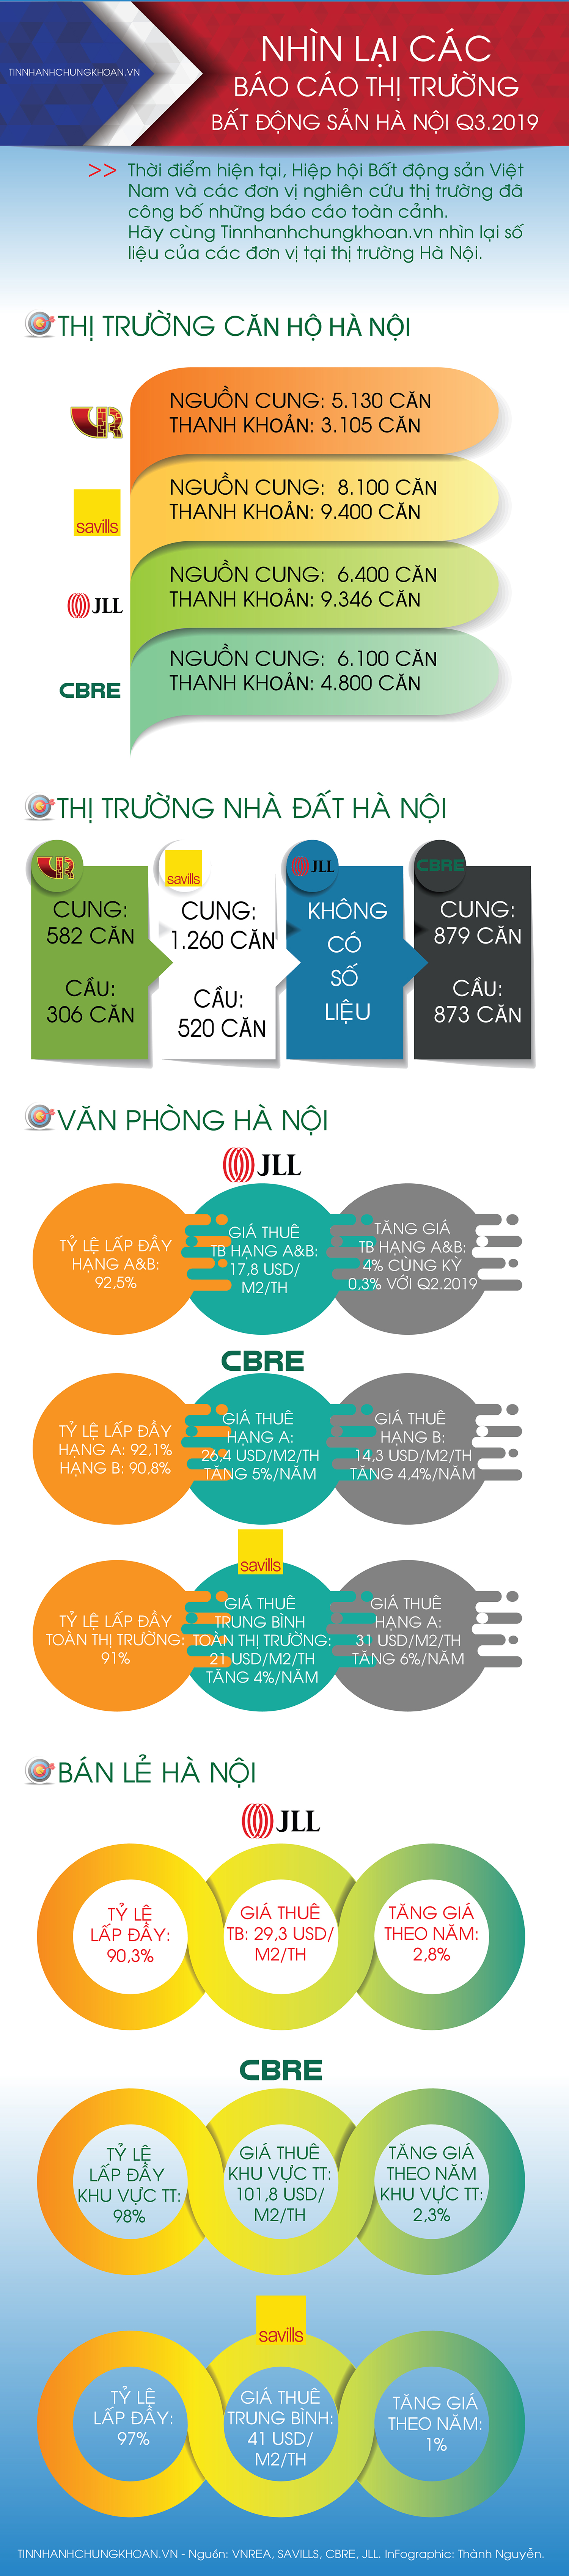 Hà Nội quý III/2019&#8243;[Infographic] Loạn số liệu báo cáo thị trường bất động sản Hà Nội quý III/2019 sosanhbaocao tiu kffe